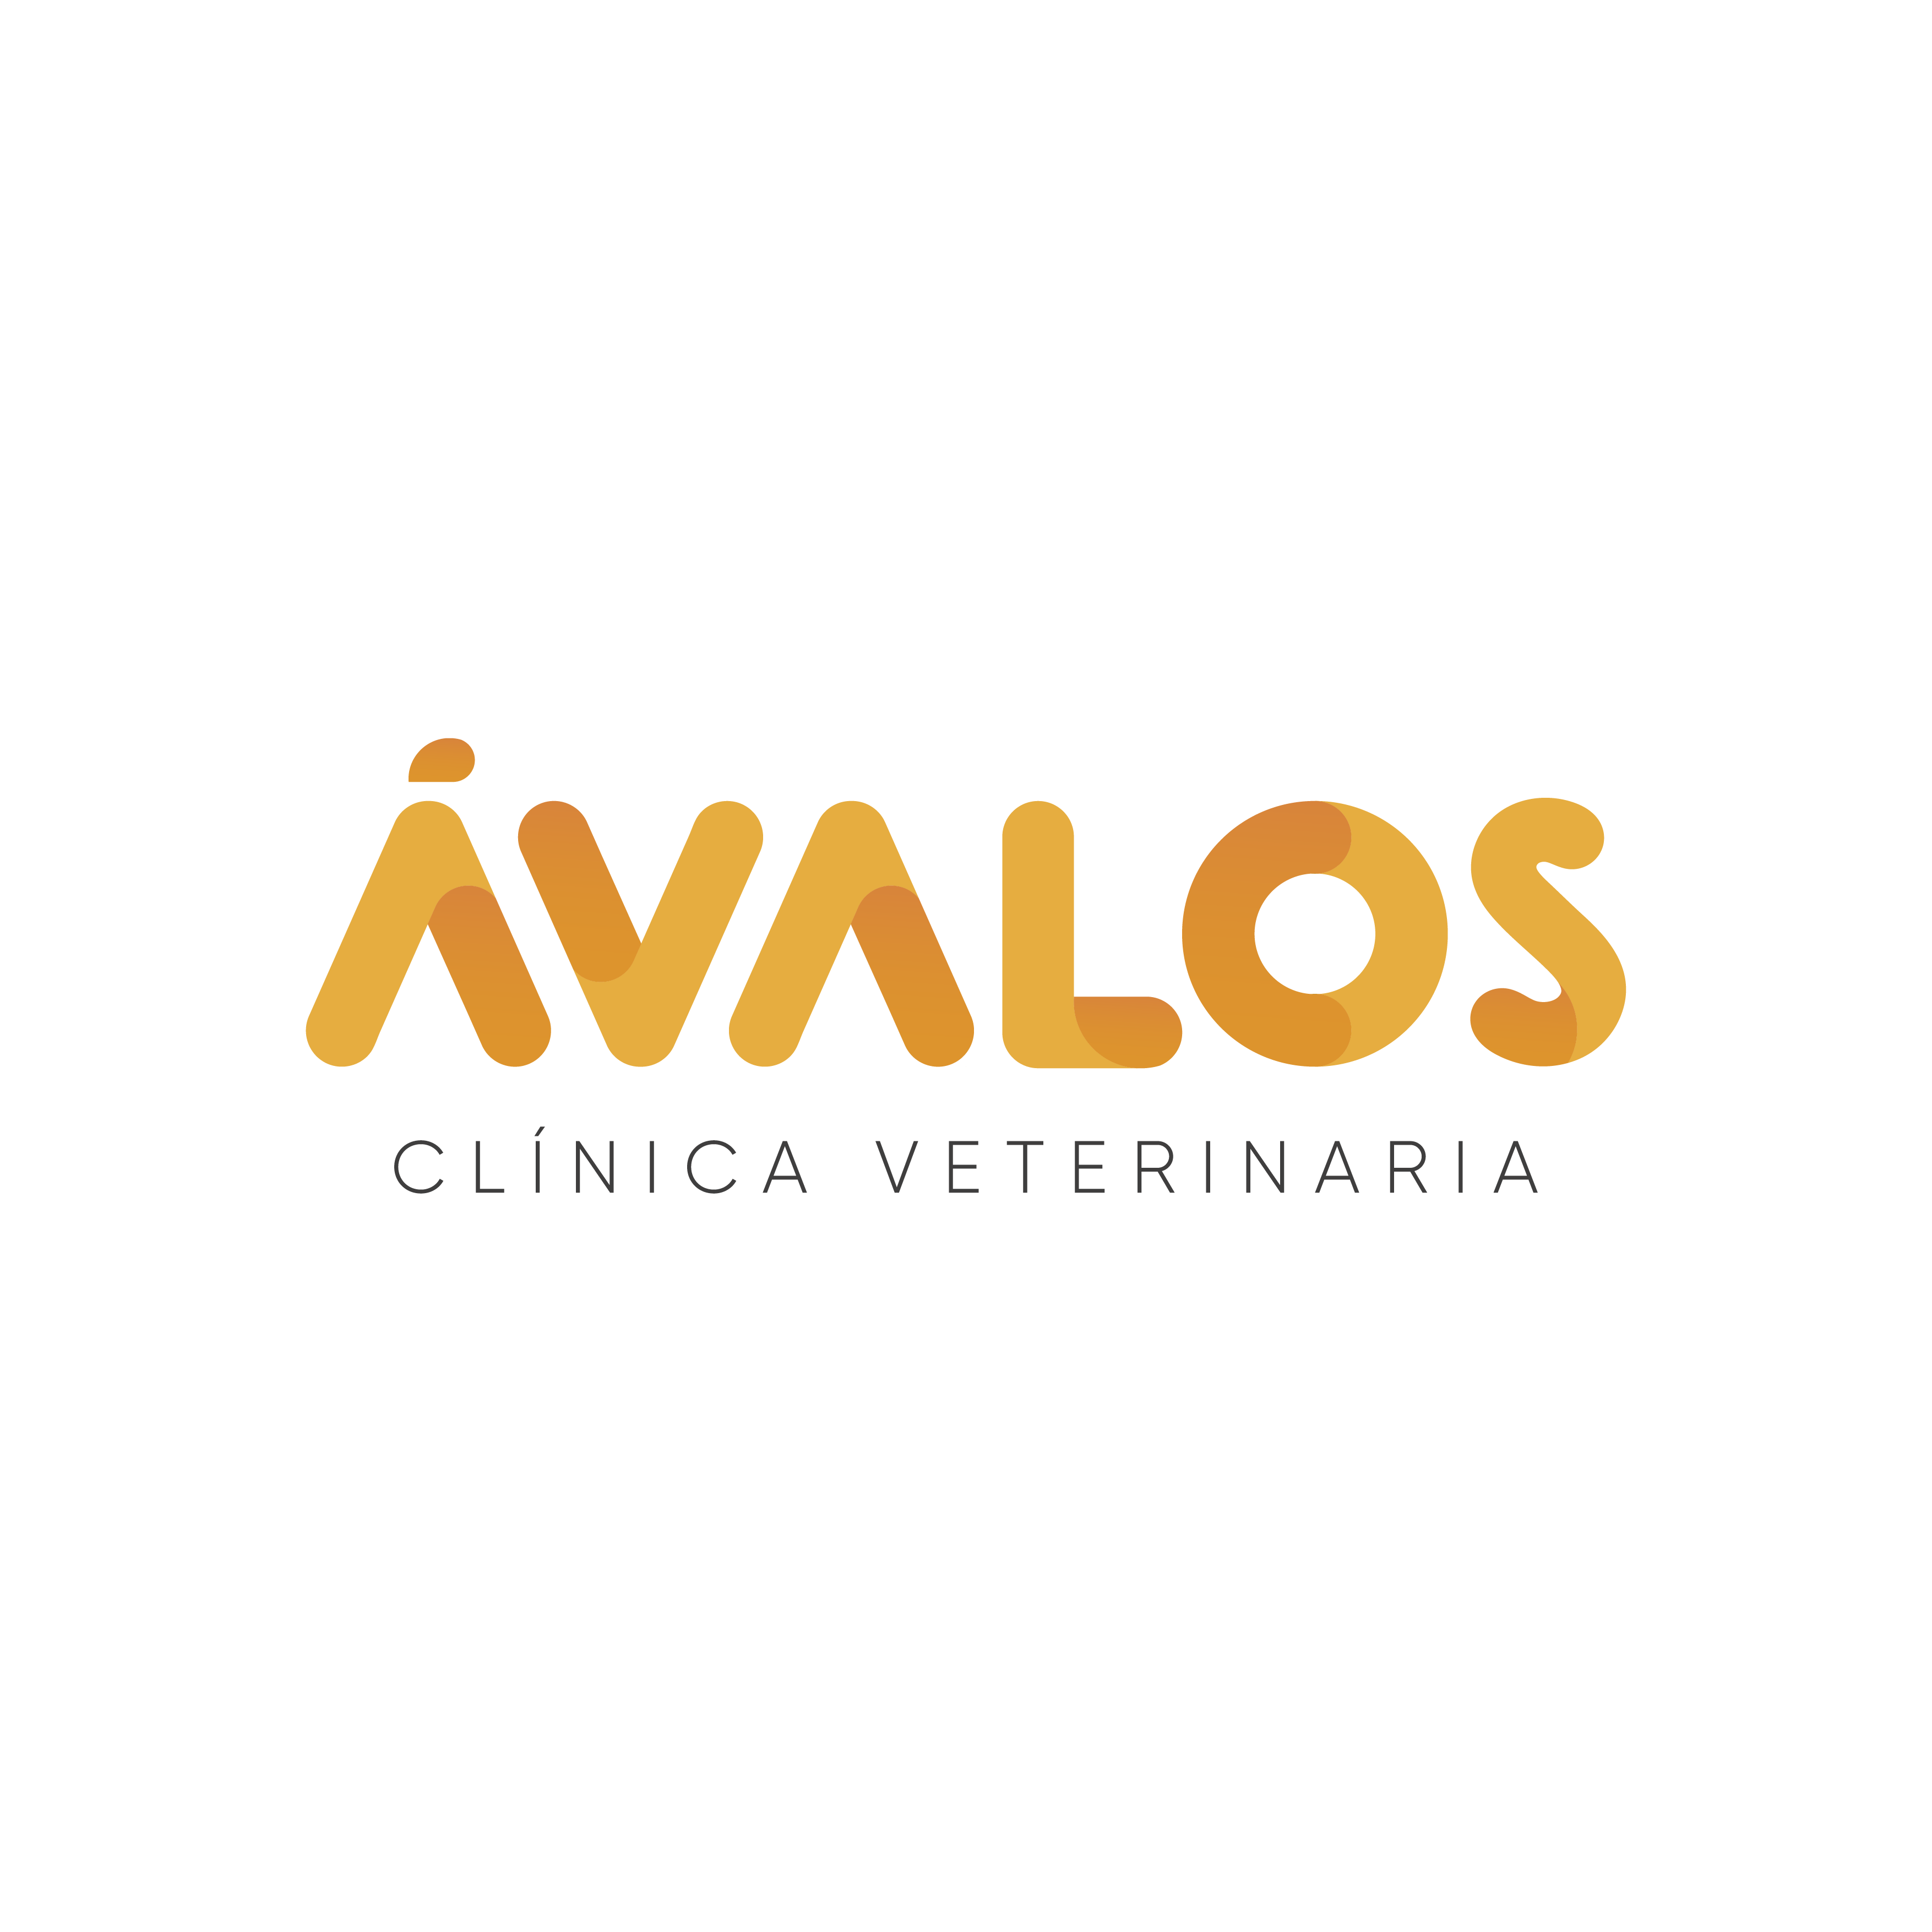 Ávalos Clínica Veterinaria Logo